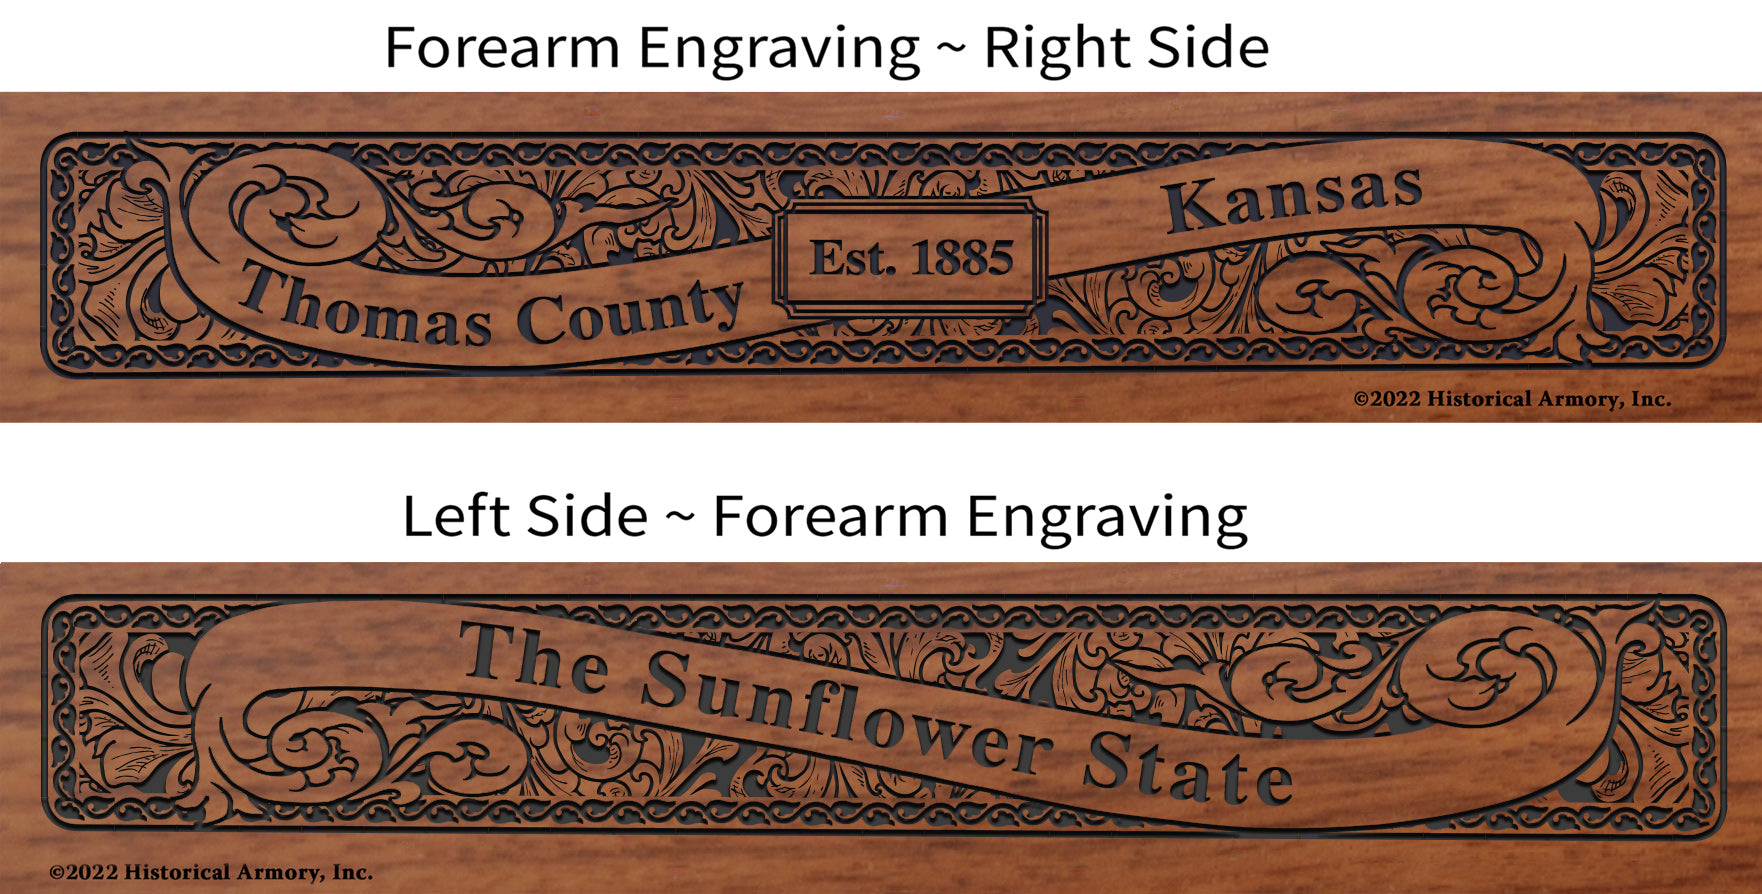 Thomas County Kansas Engraved Rifle Forearm